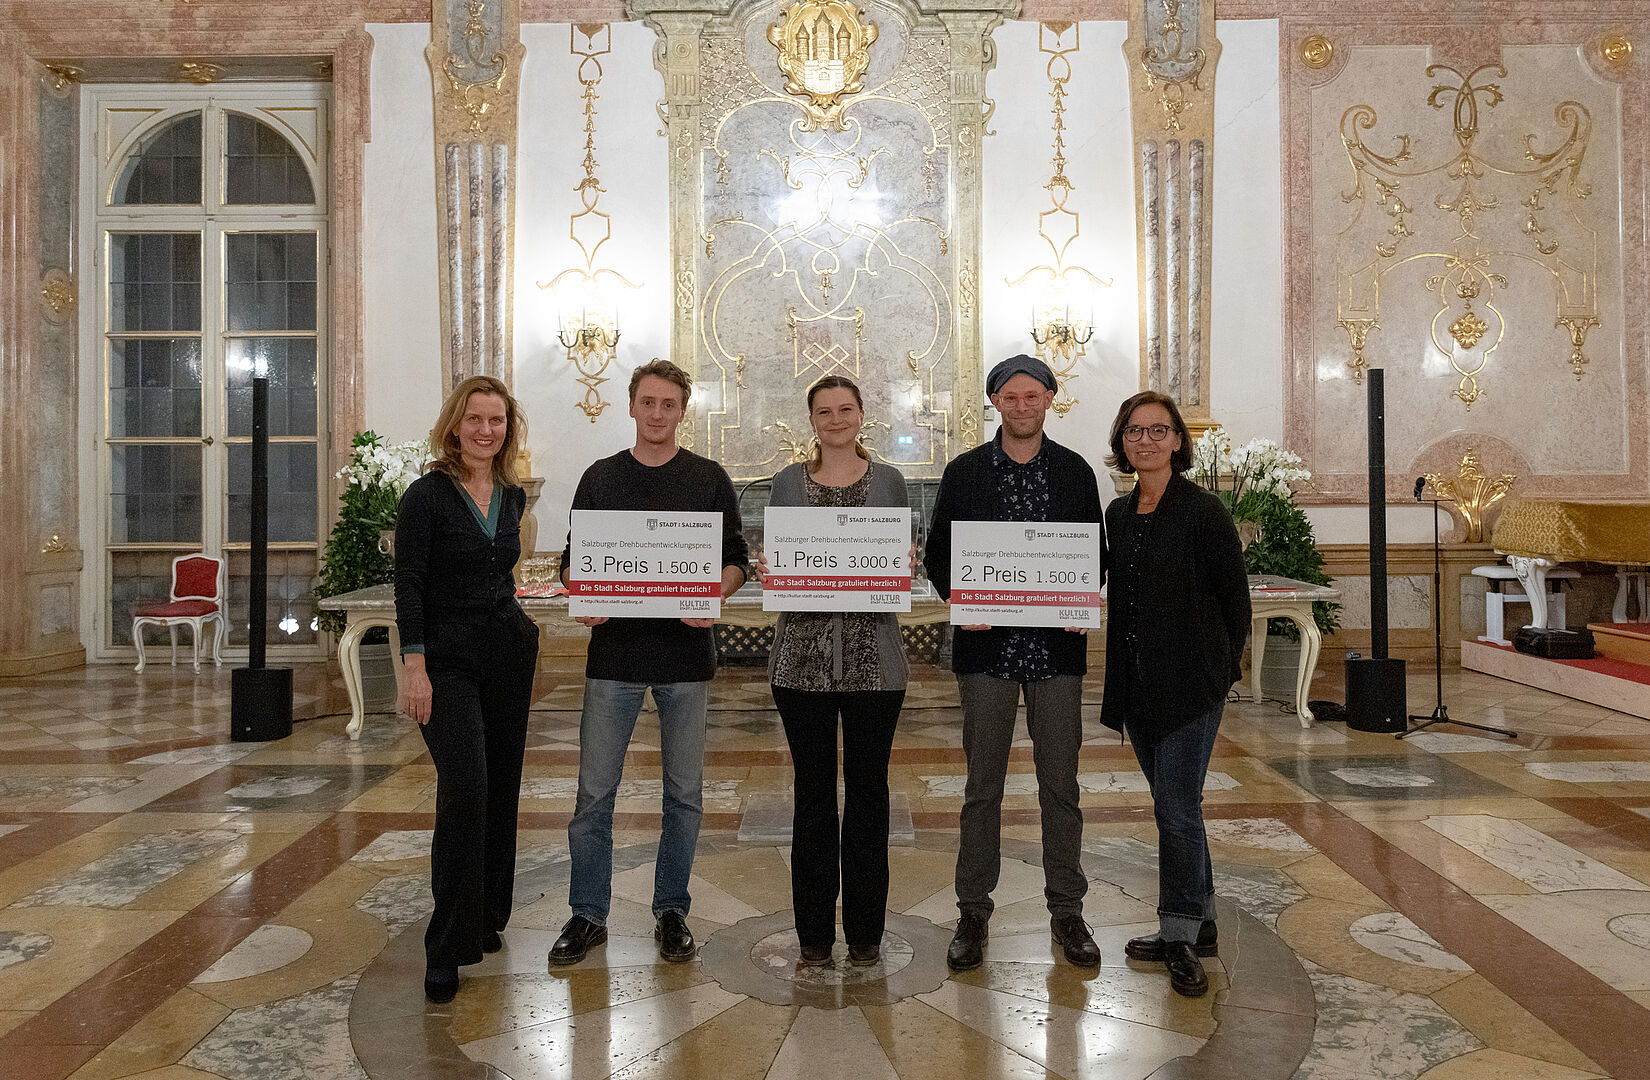 Gruppenfoto im Marmorsaal Schloß Mirabell; die Preisträger halten ihre Preise in Form von übergroßen Gutscheinen vor dem Körper in Händen.